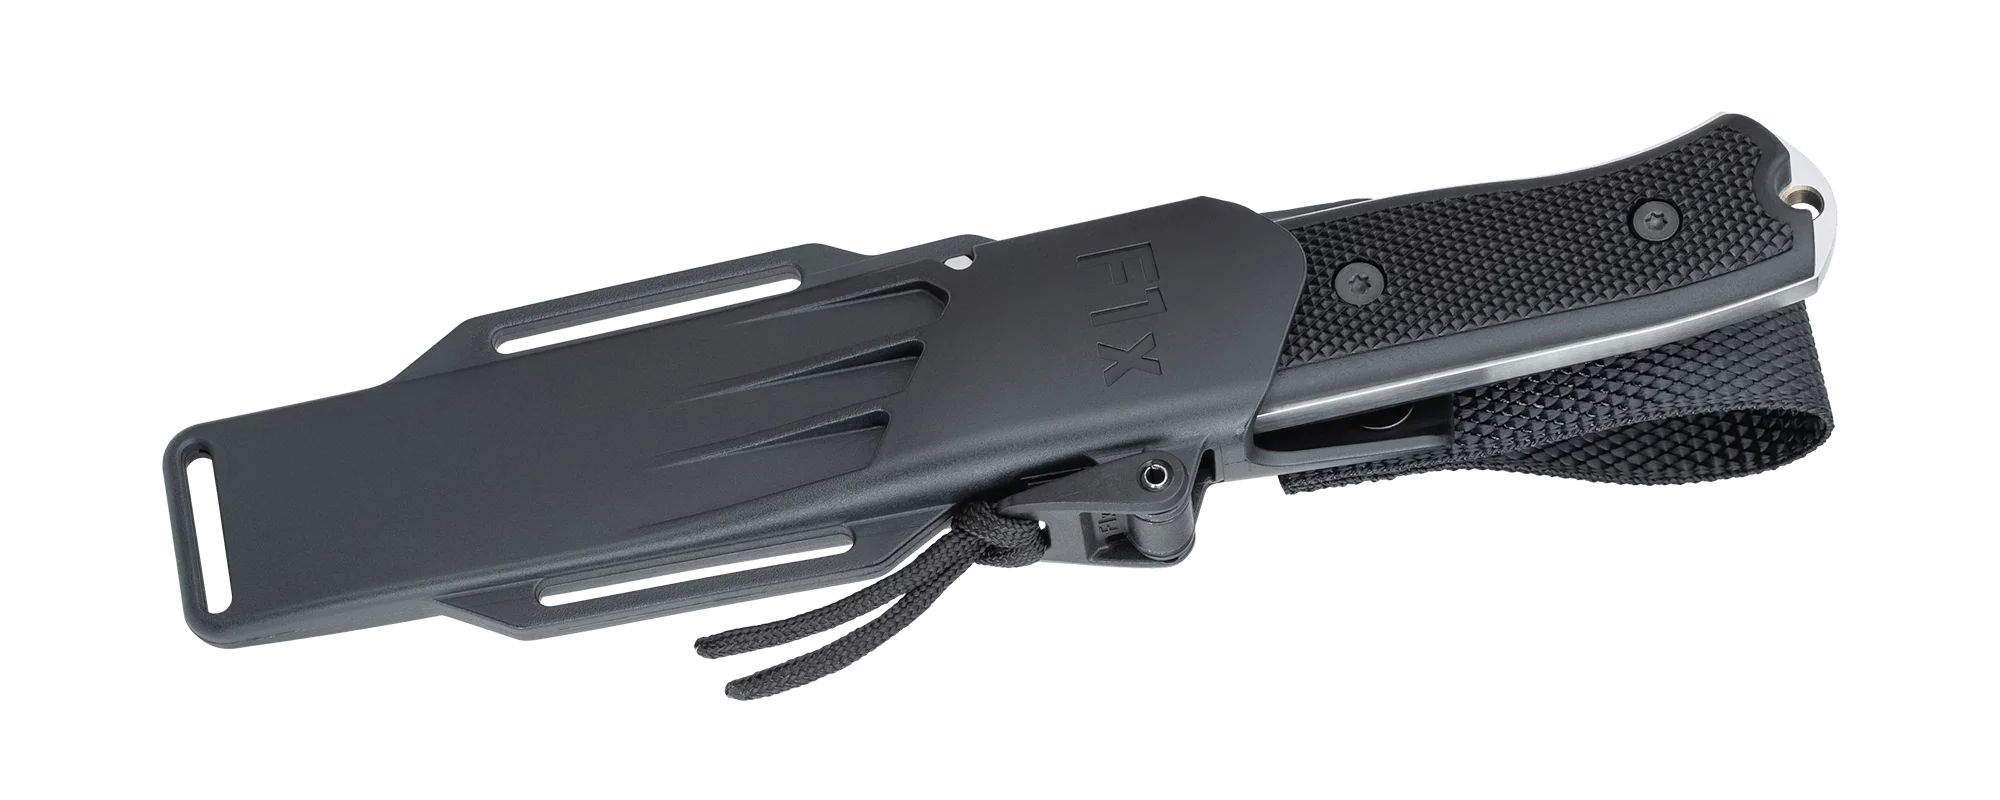 Fallkniven F1X Elmax Survival Fixed Blade Knife – Elmax Steel